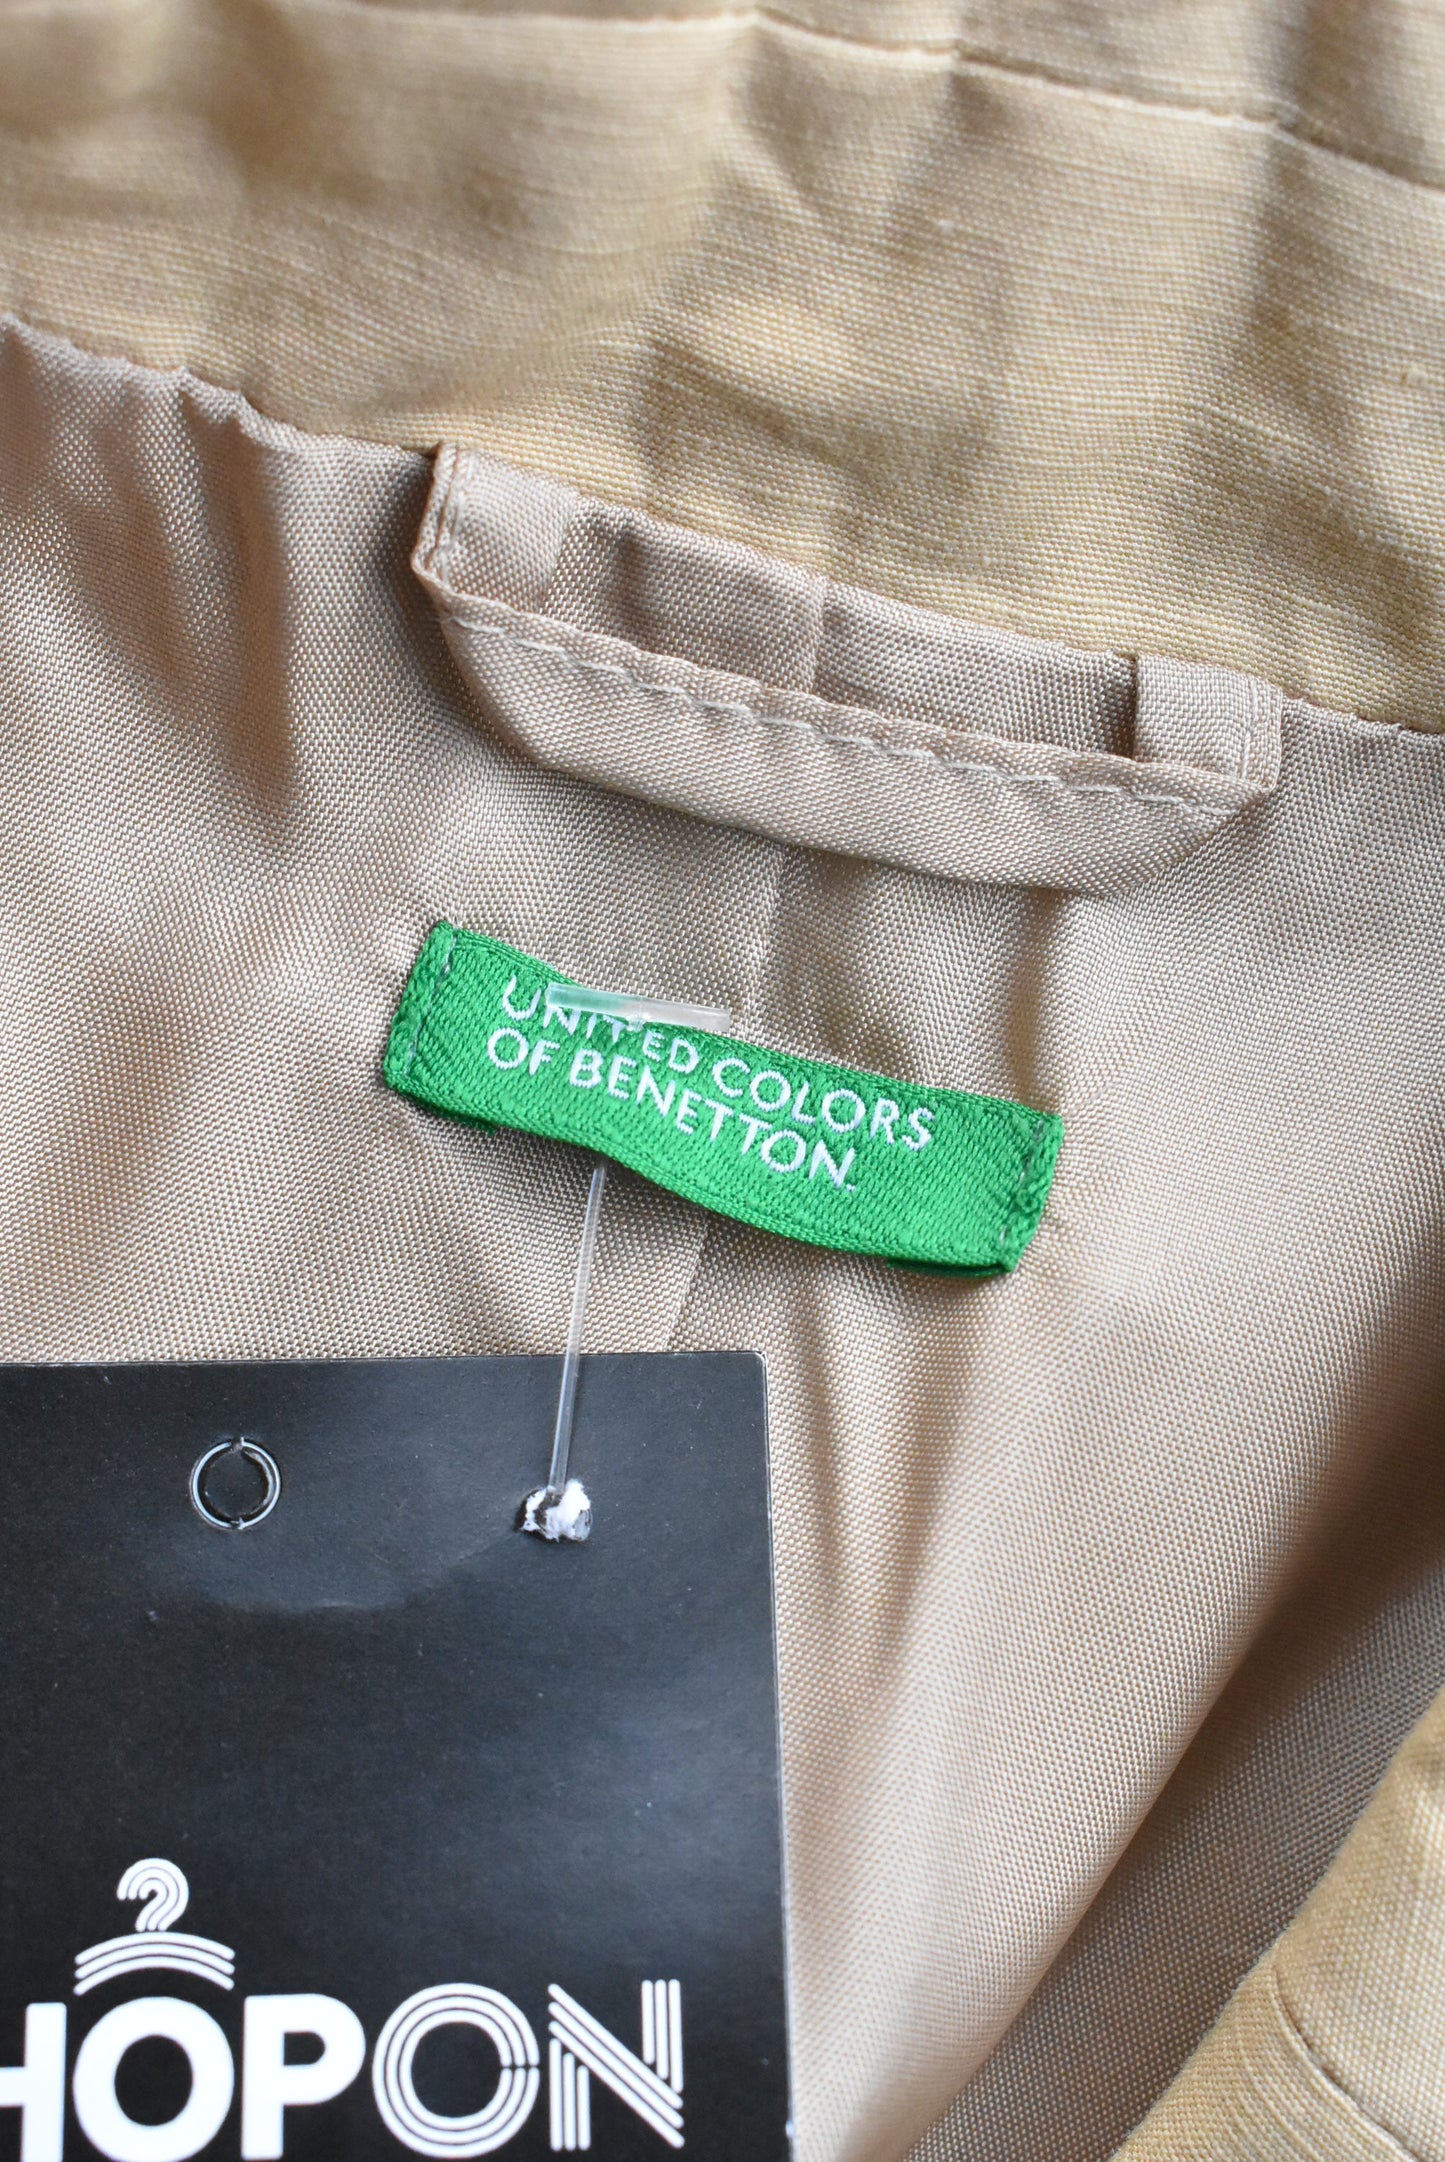 United Colors of Benetton linen/cotton blend blazer, S/XS